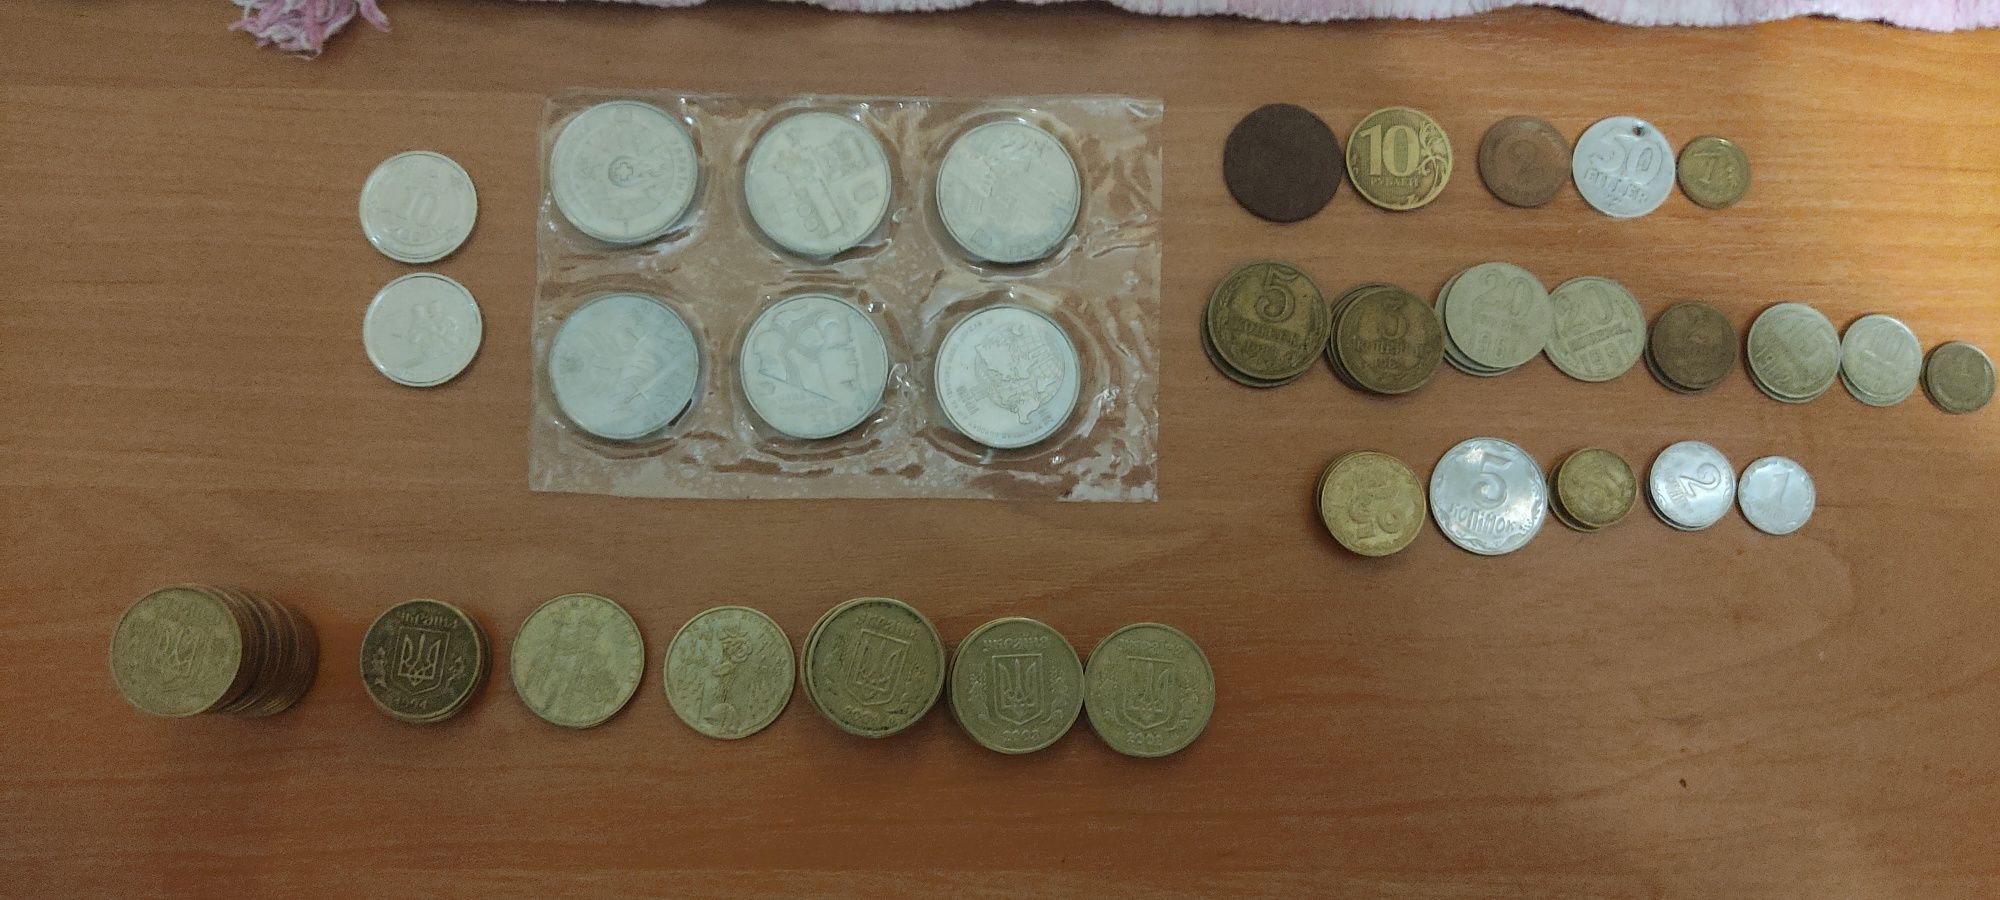 Монети колекційні